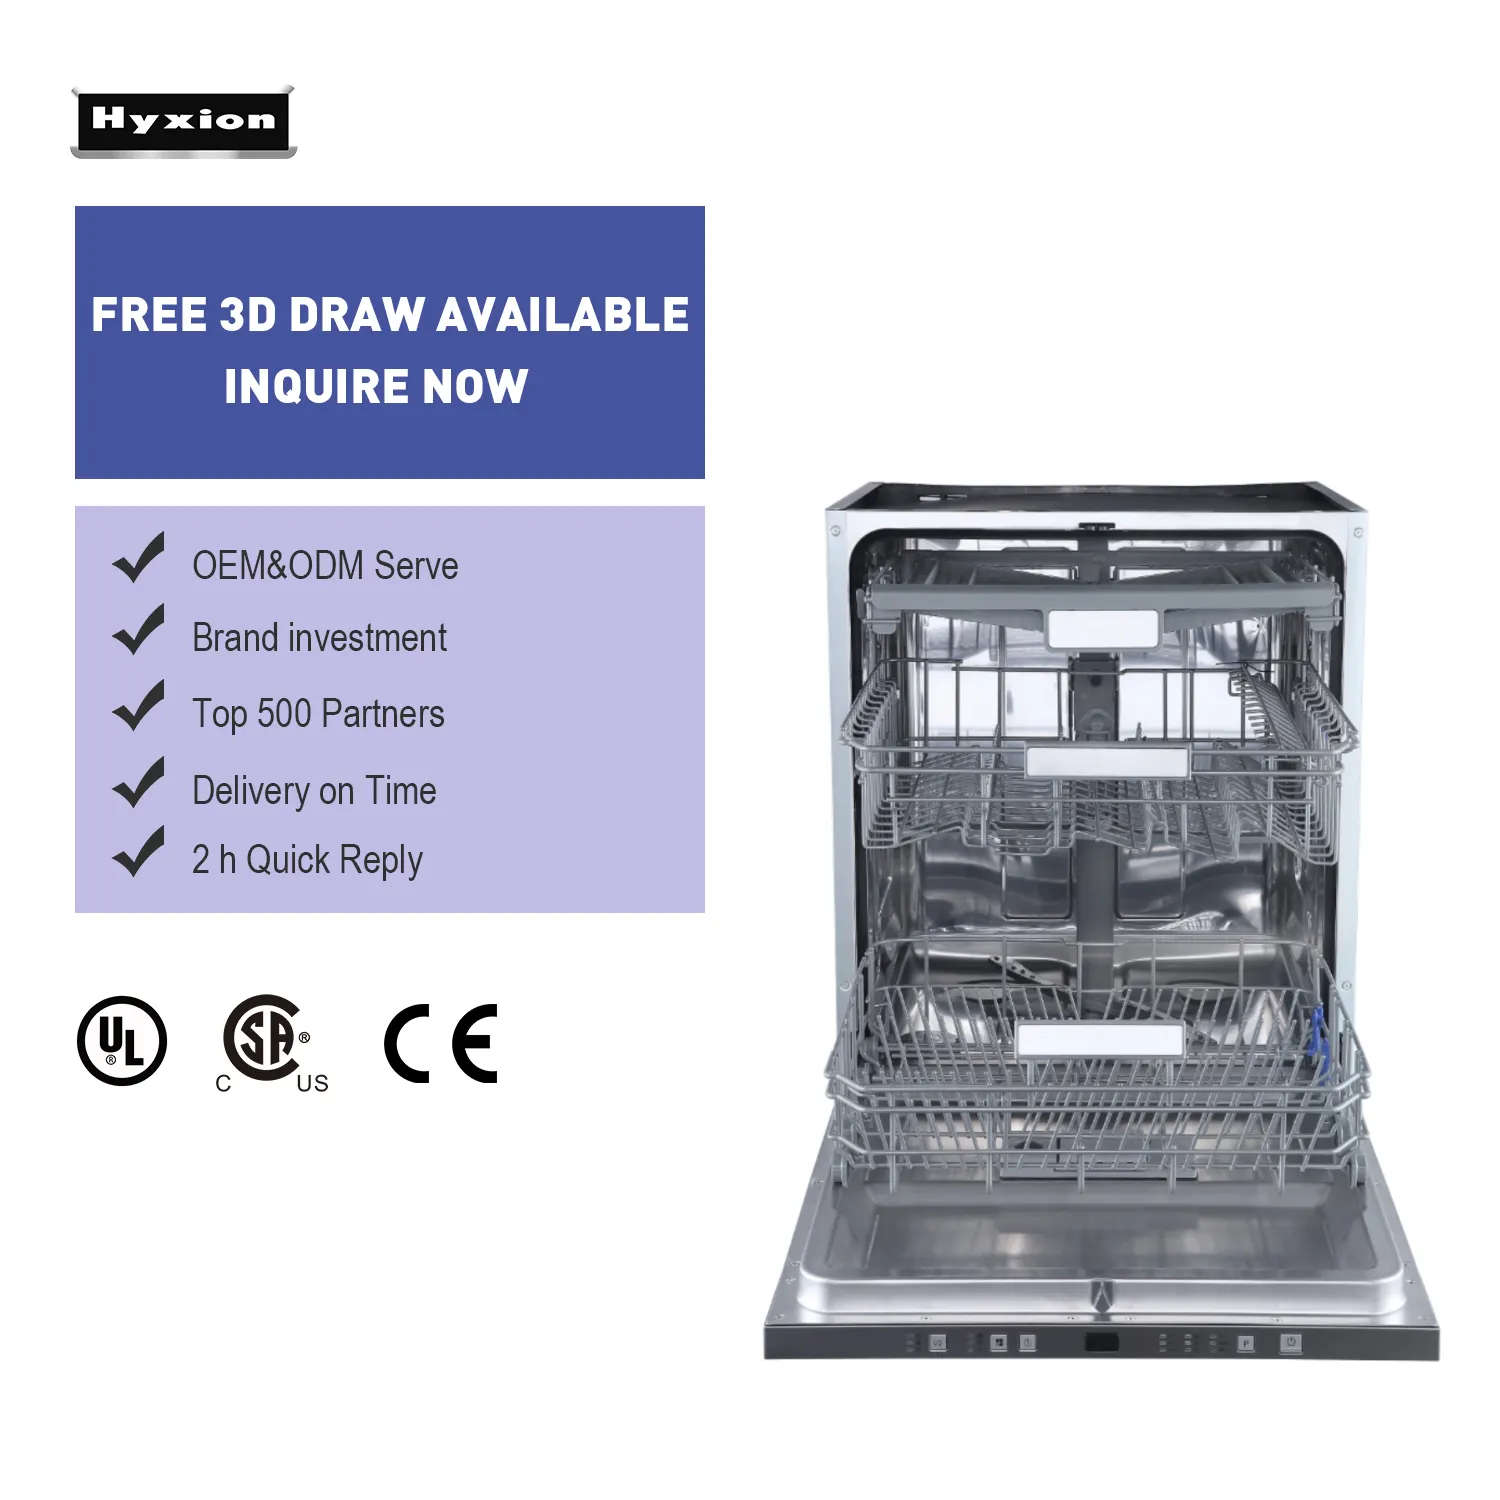 Hyxion Smart kitchen appliances ECO safe machine per utensili domestici lavatrice lavastoviglie